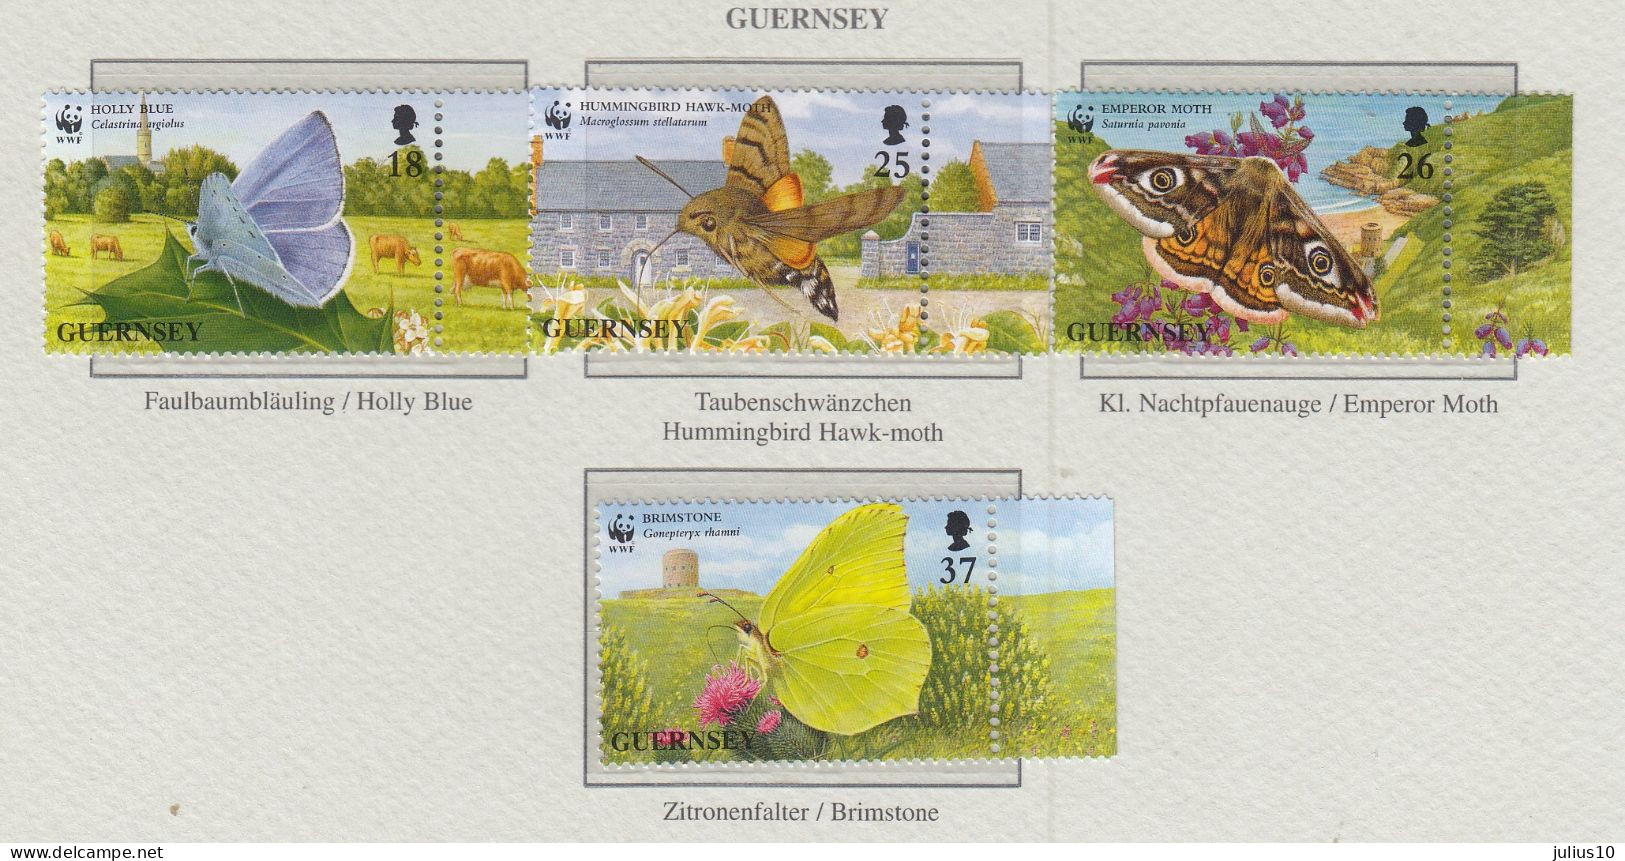 GUERNSEY 1997 WWF Insects Butterflies Mi 729-732 MNH(**) Fauna 561 - Butterflies